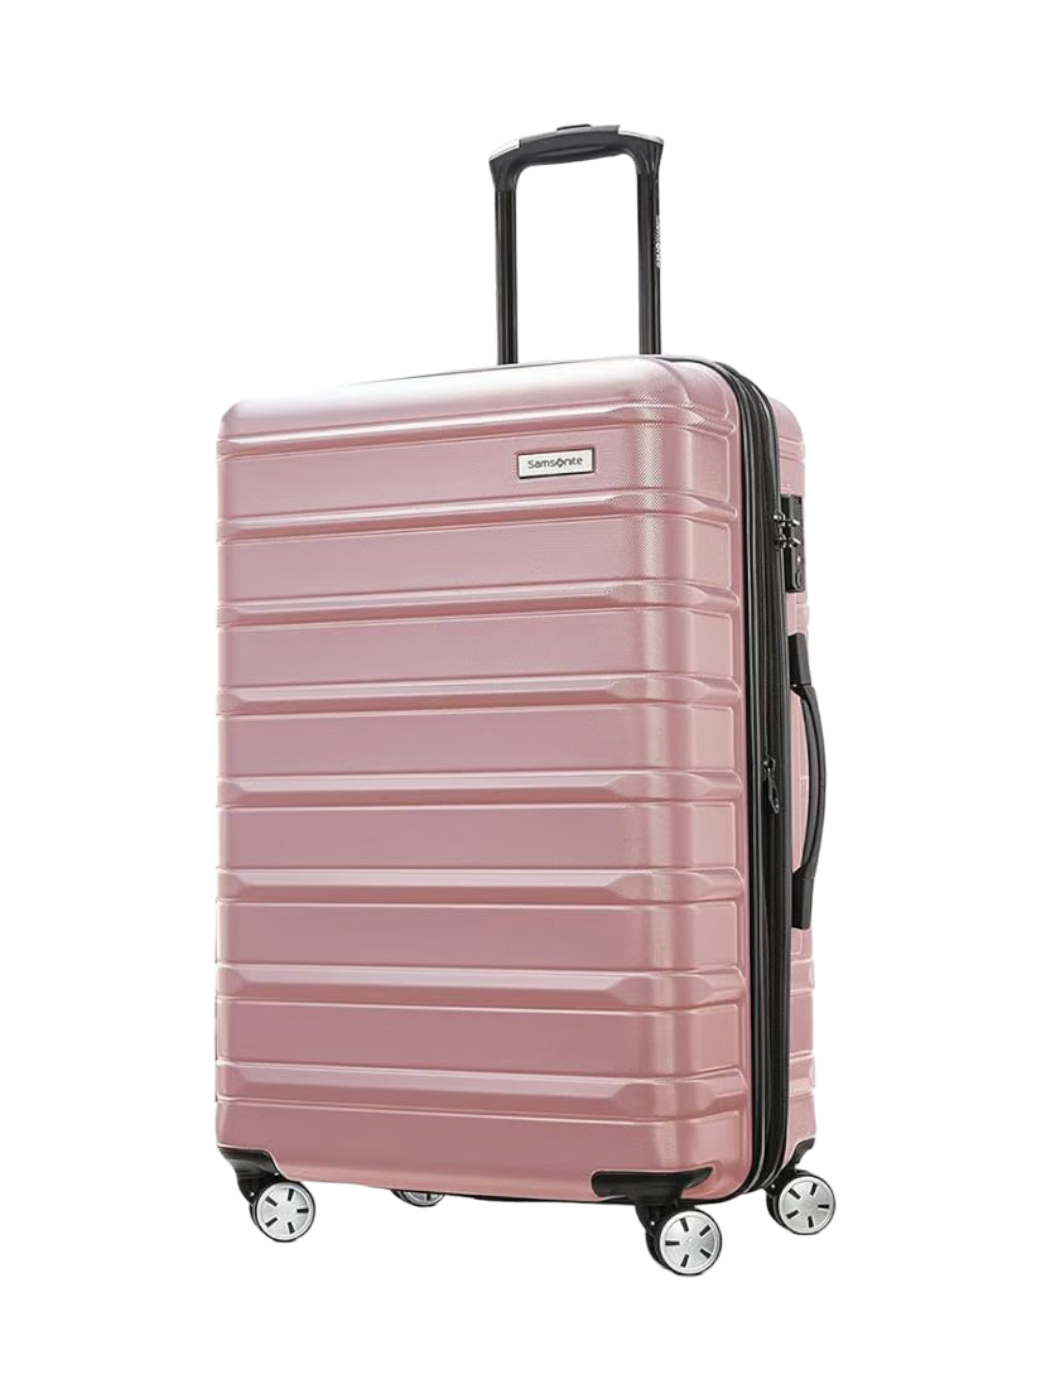 vous partez en vacances ? voici les 15 valises cabine les plus mode de l'été